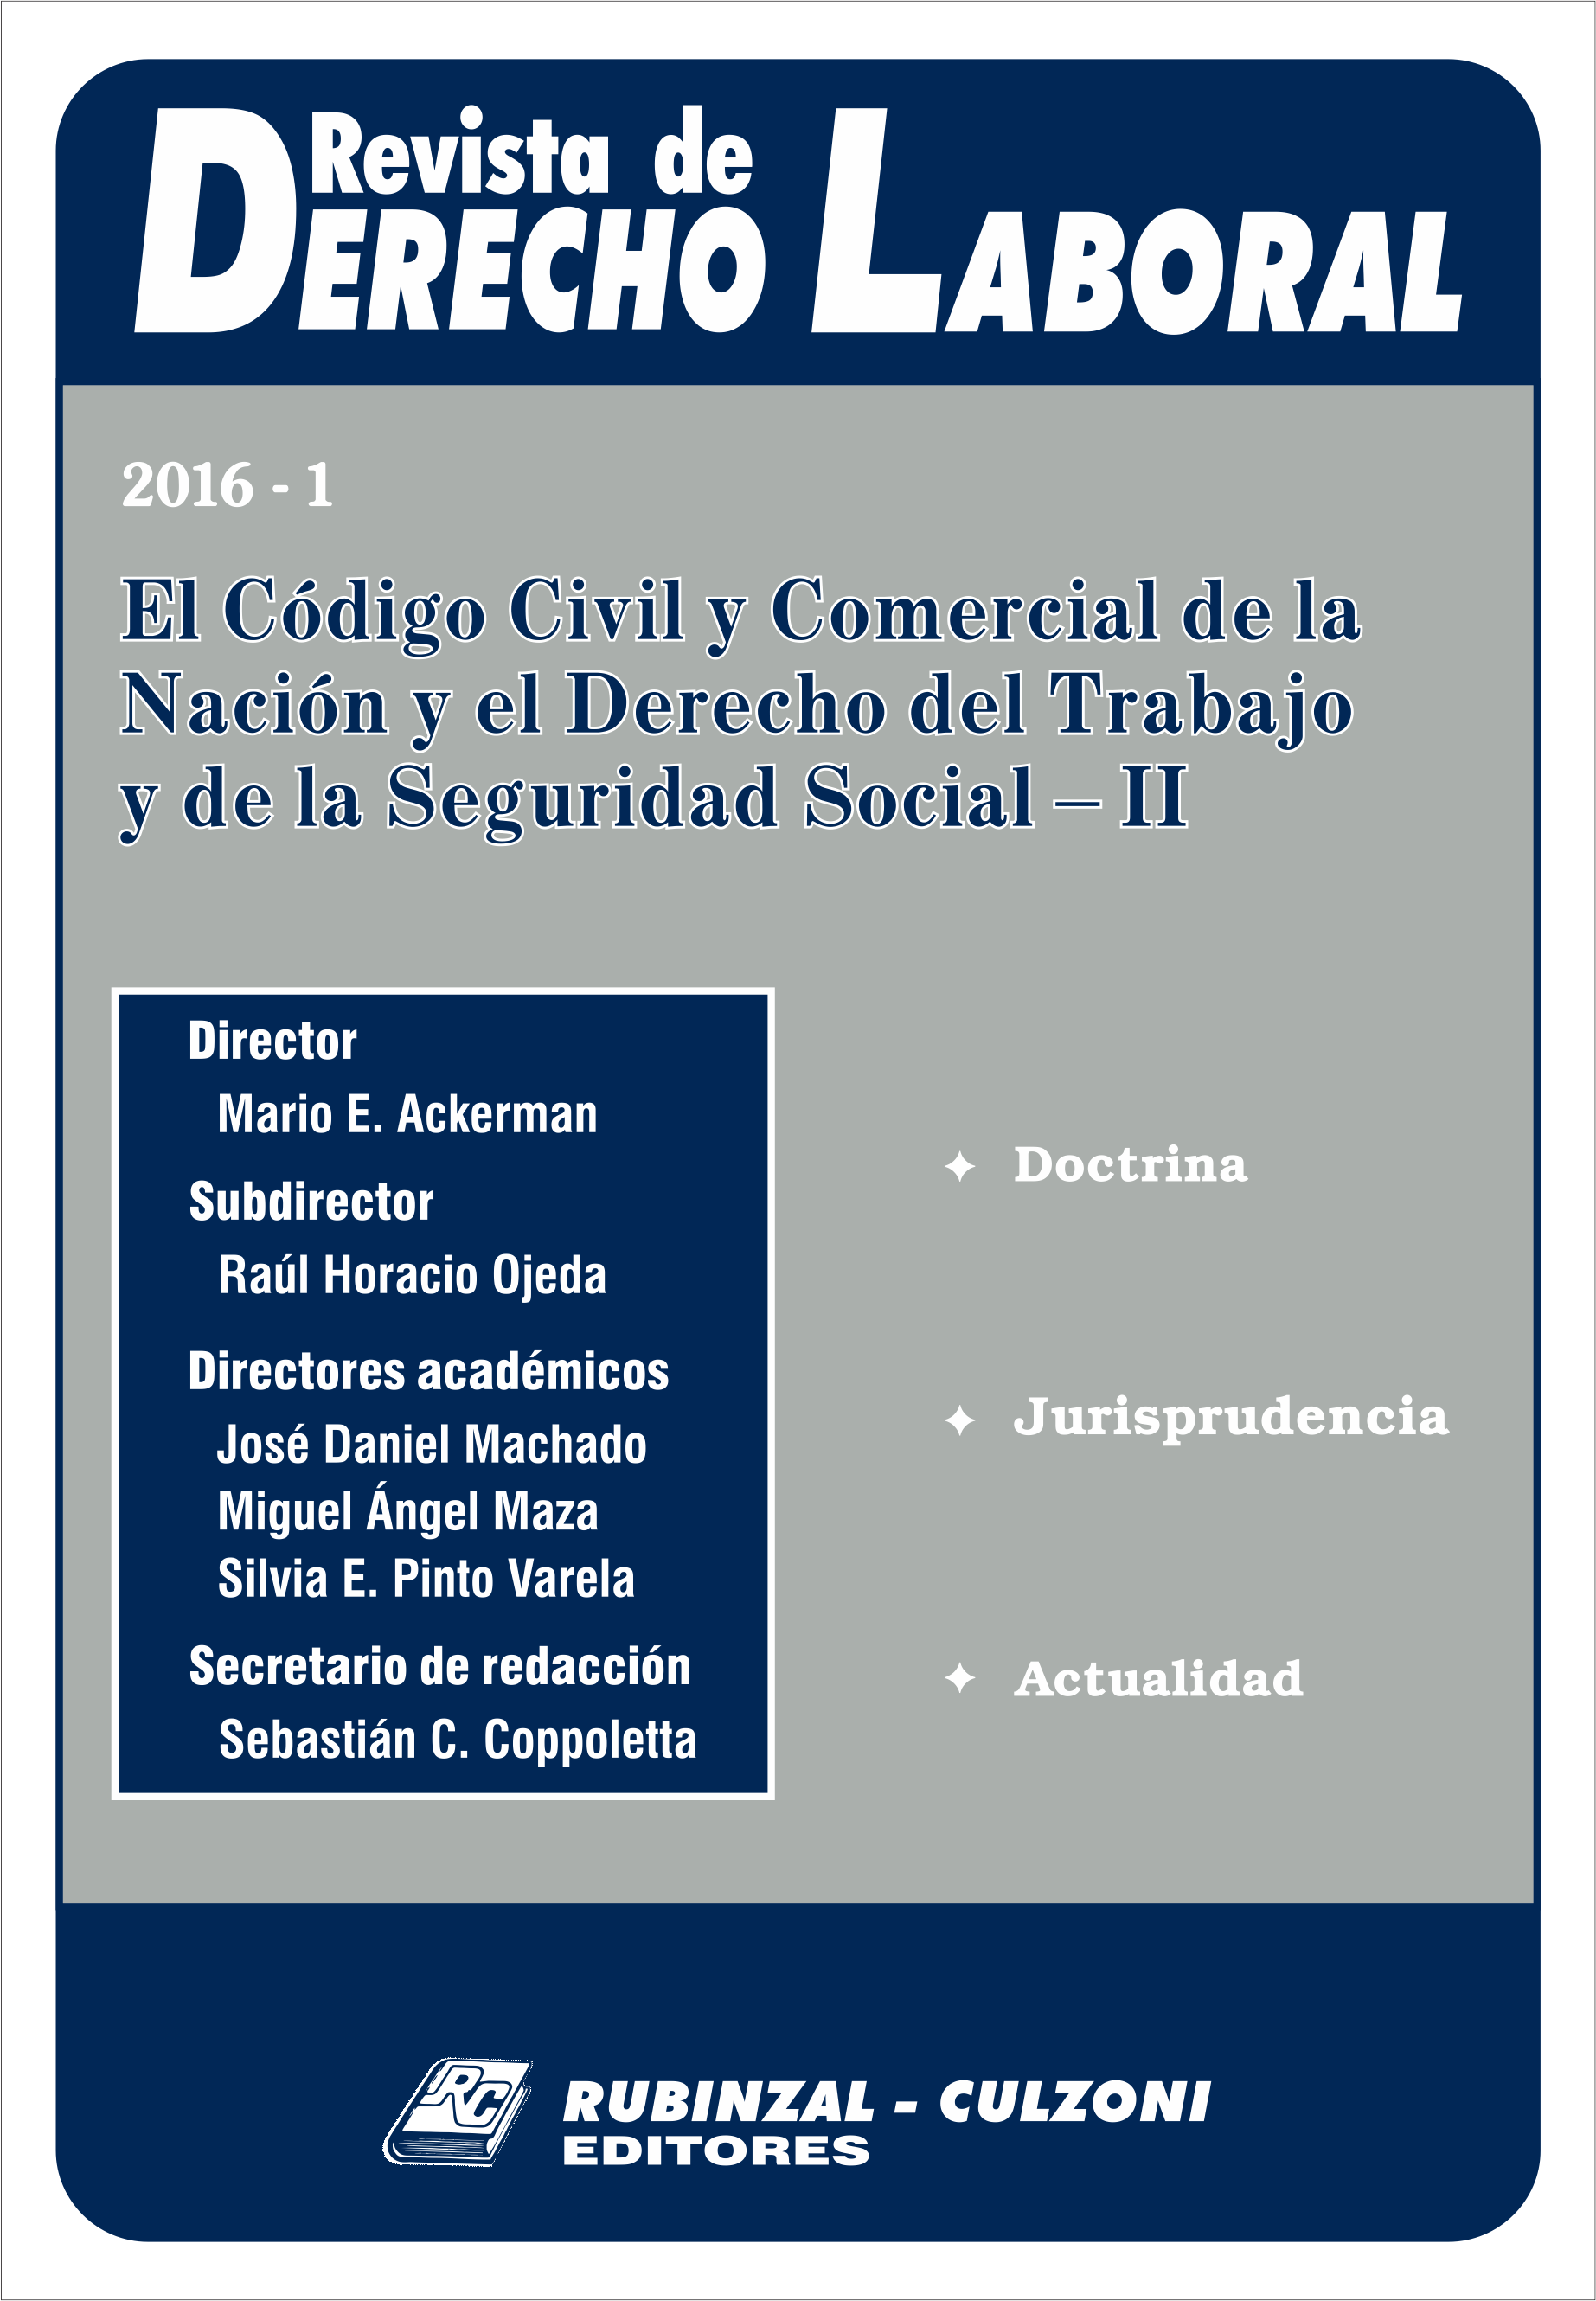  - El Código Civil y Comercial de la Nación y el Derecho del Trabajo y de la Seguridad Social - II [2016-1]